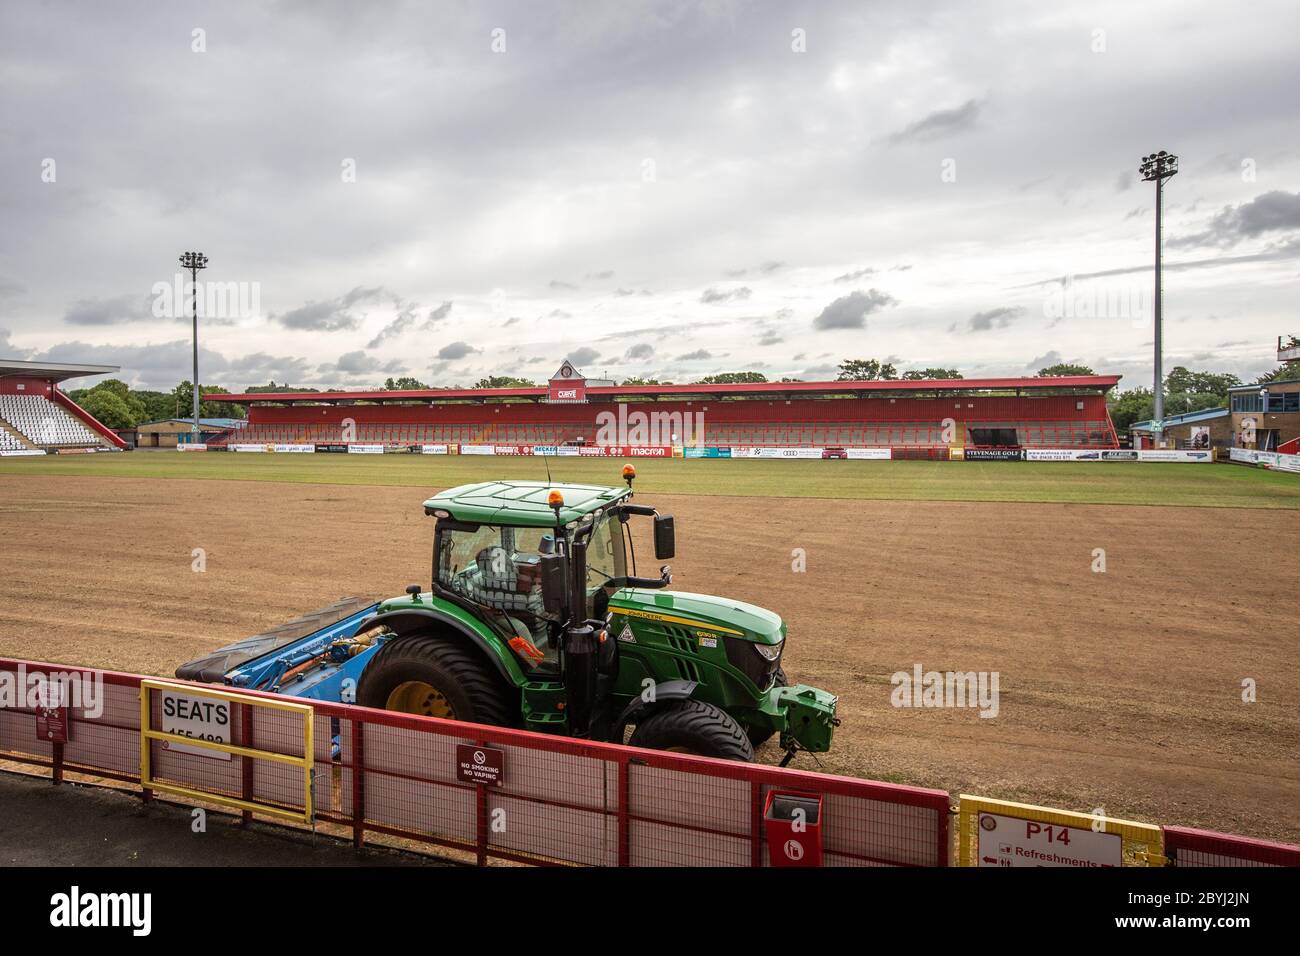 Traktor auf Fußball / Fußballplatz auf Sportplatz während der Saisonende Arbeit von Bodenpersonal Umlagerung Rasen. Stockfoto